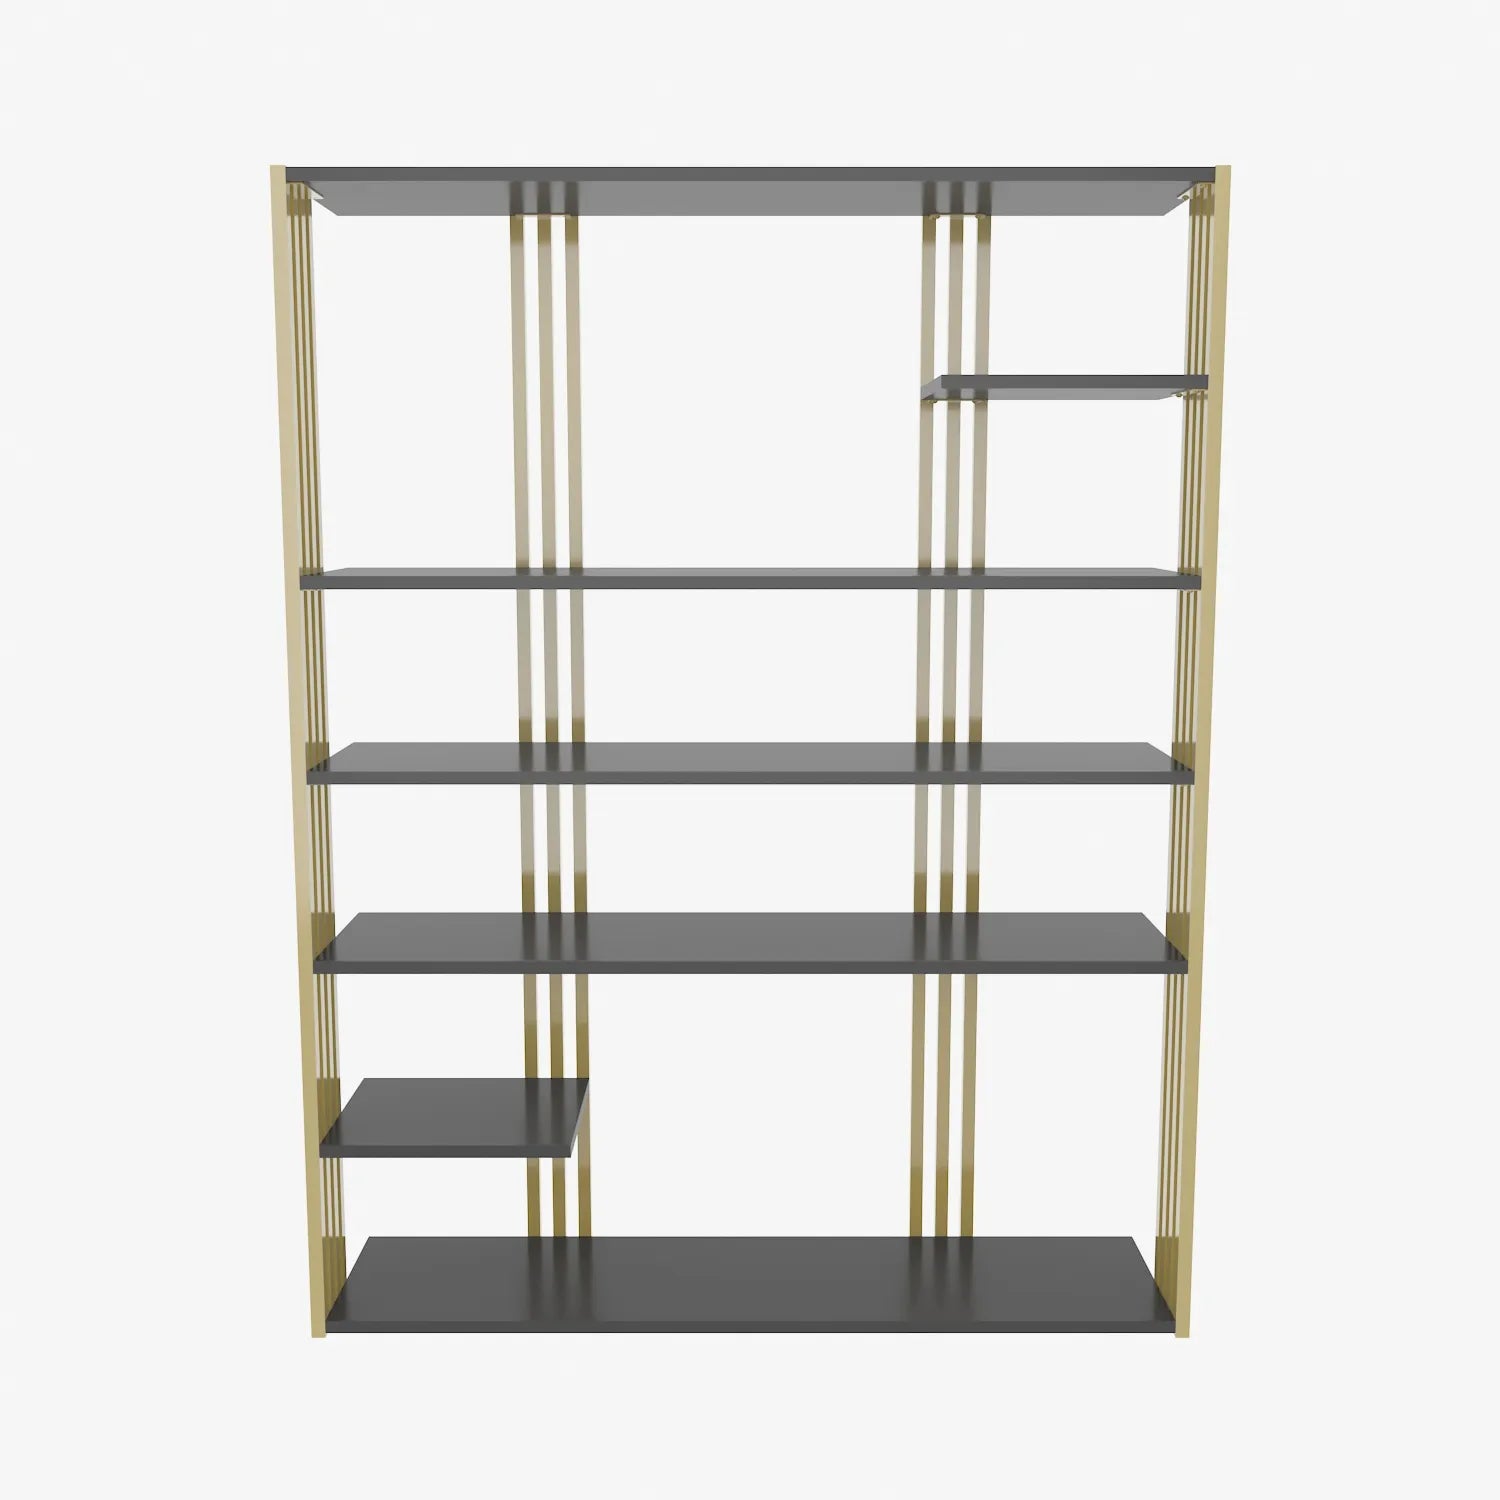 Jeni 63" Tall Metal Wood Bookcase | Bookshelf | Display Unit